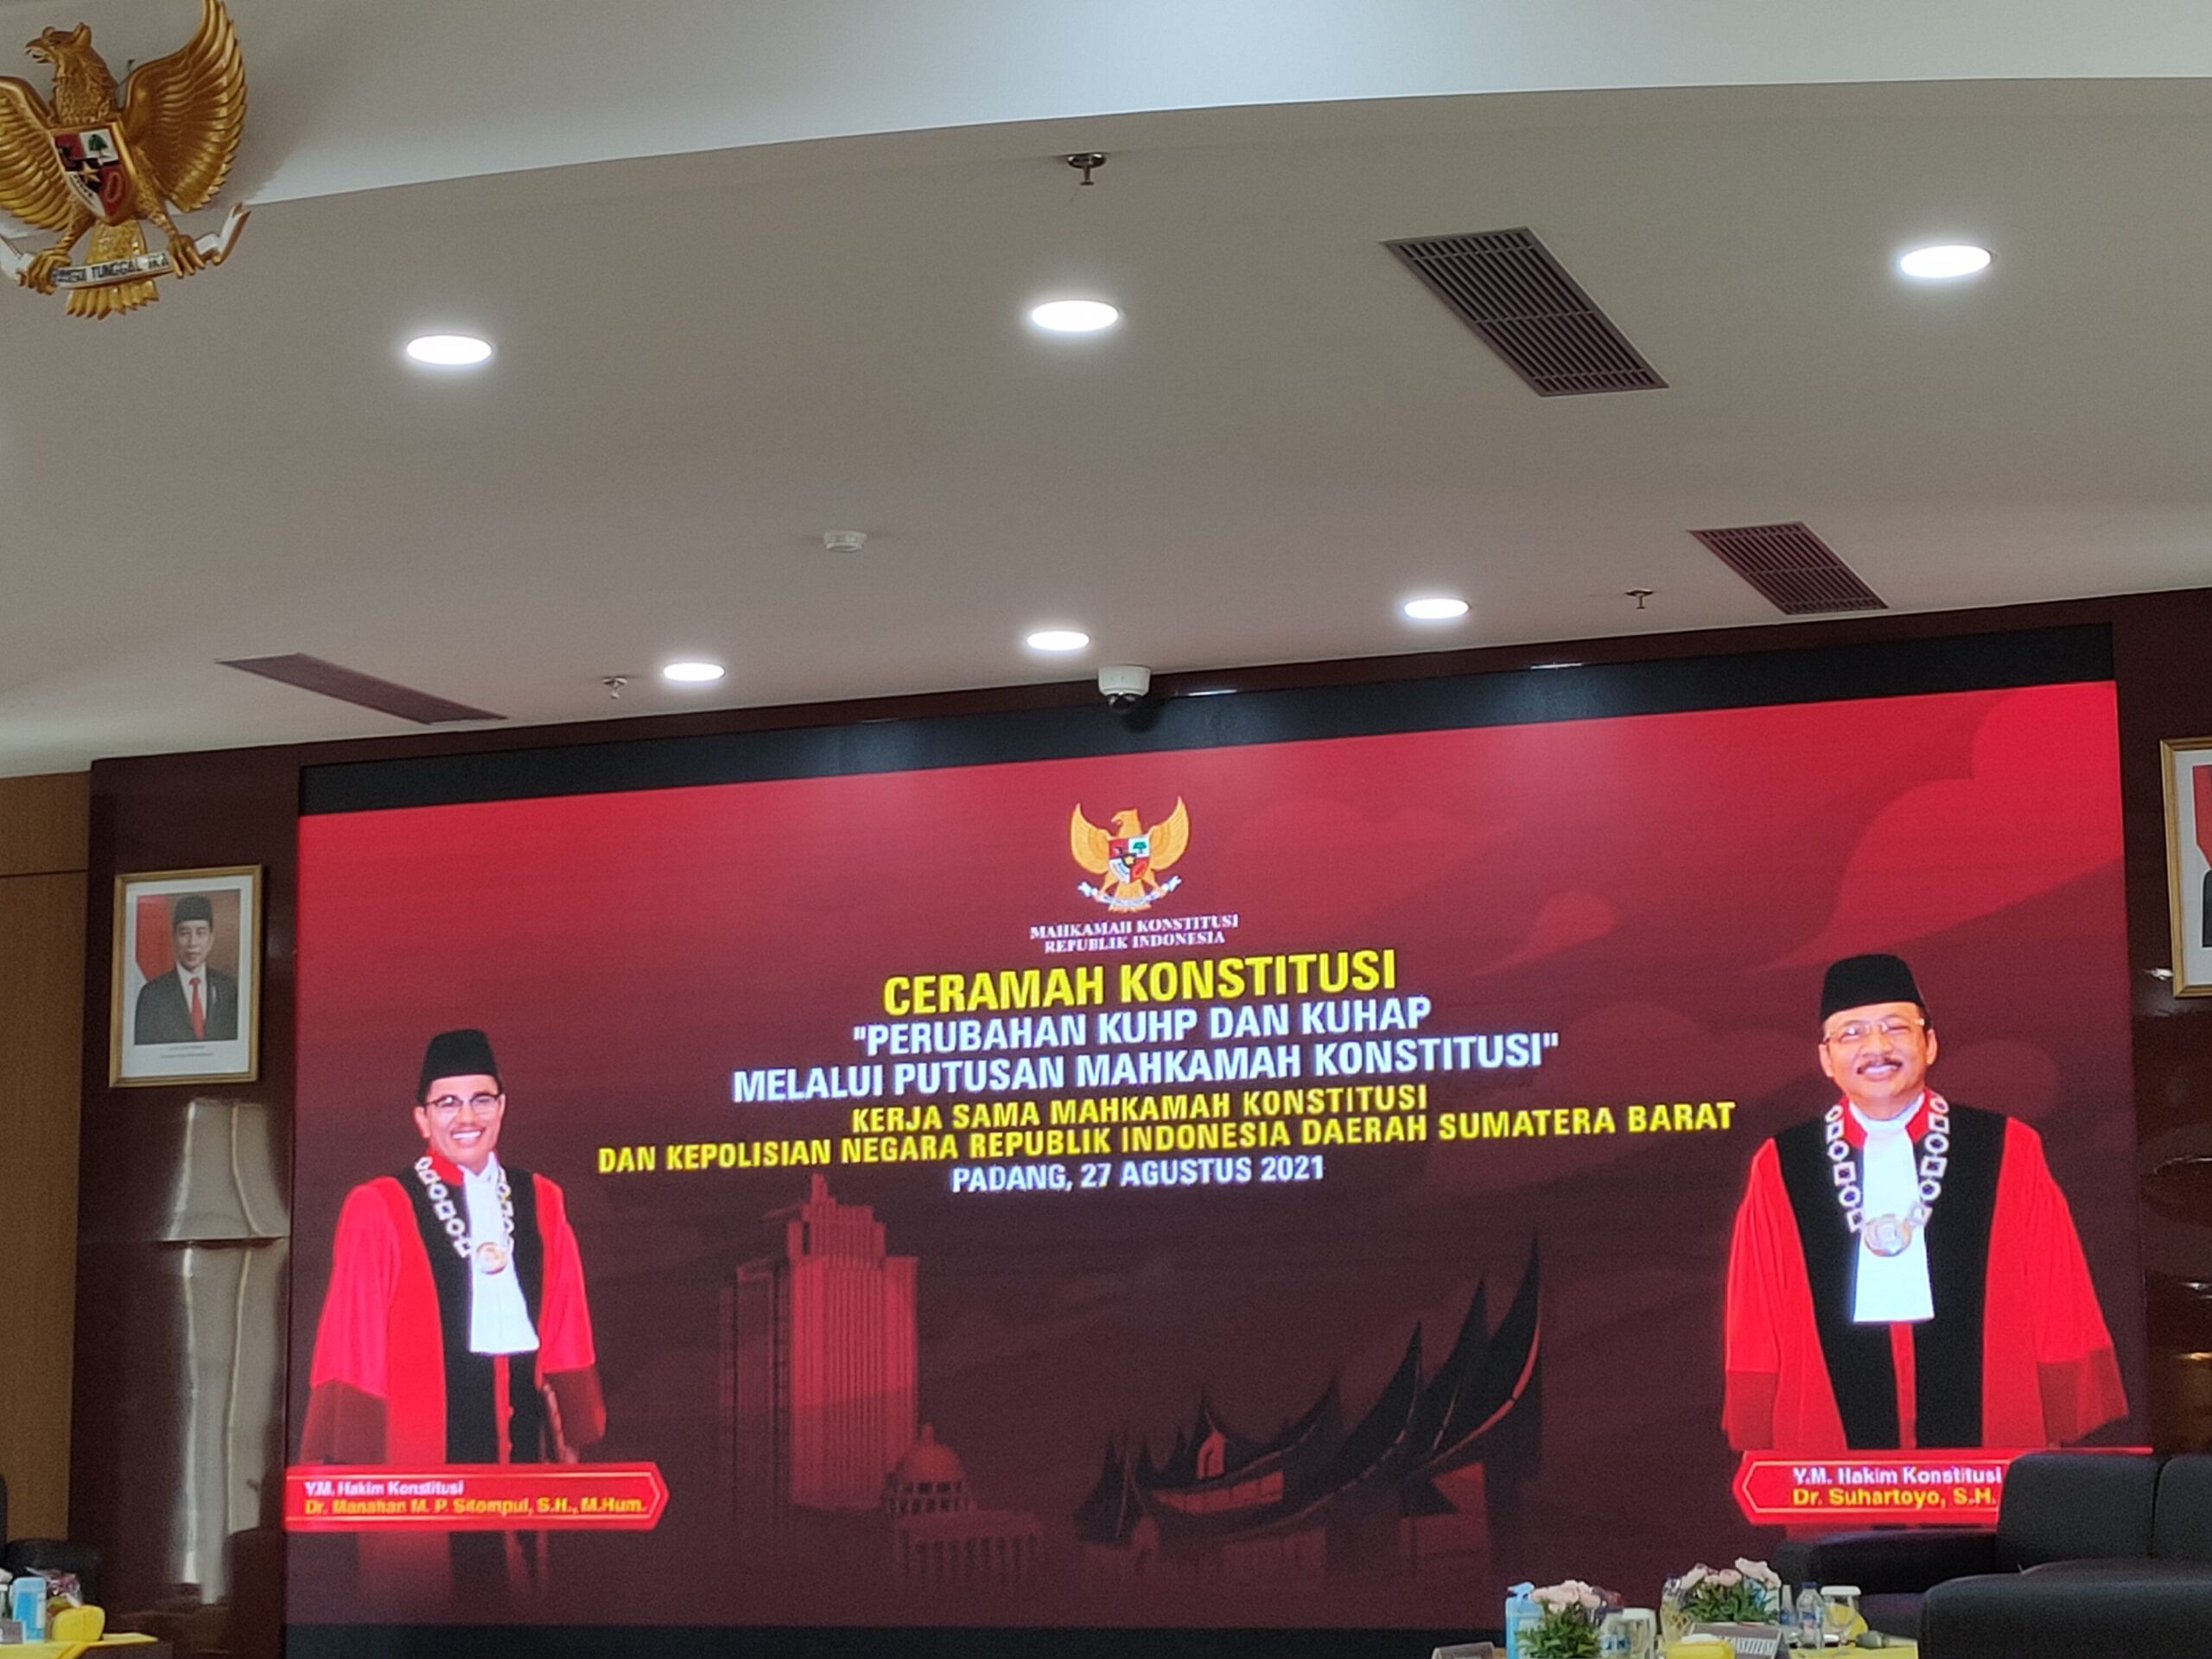 Profil Hakim Konstitusi YM Suhartoyo yang Sampaikan Materi KUHP